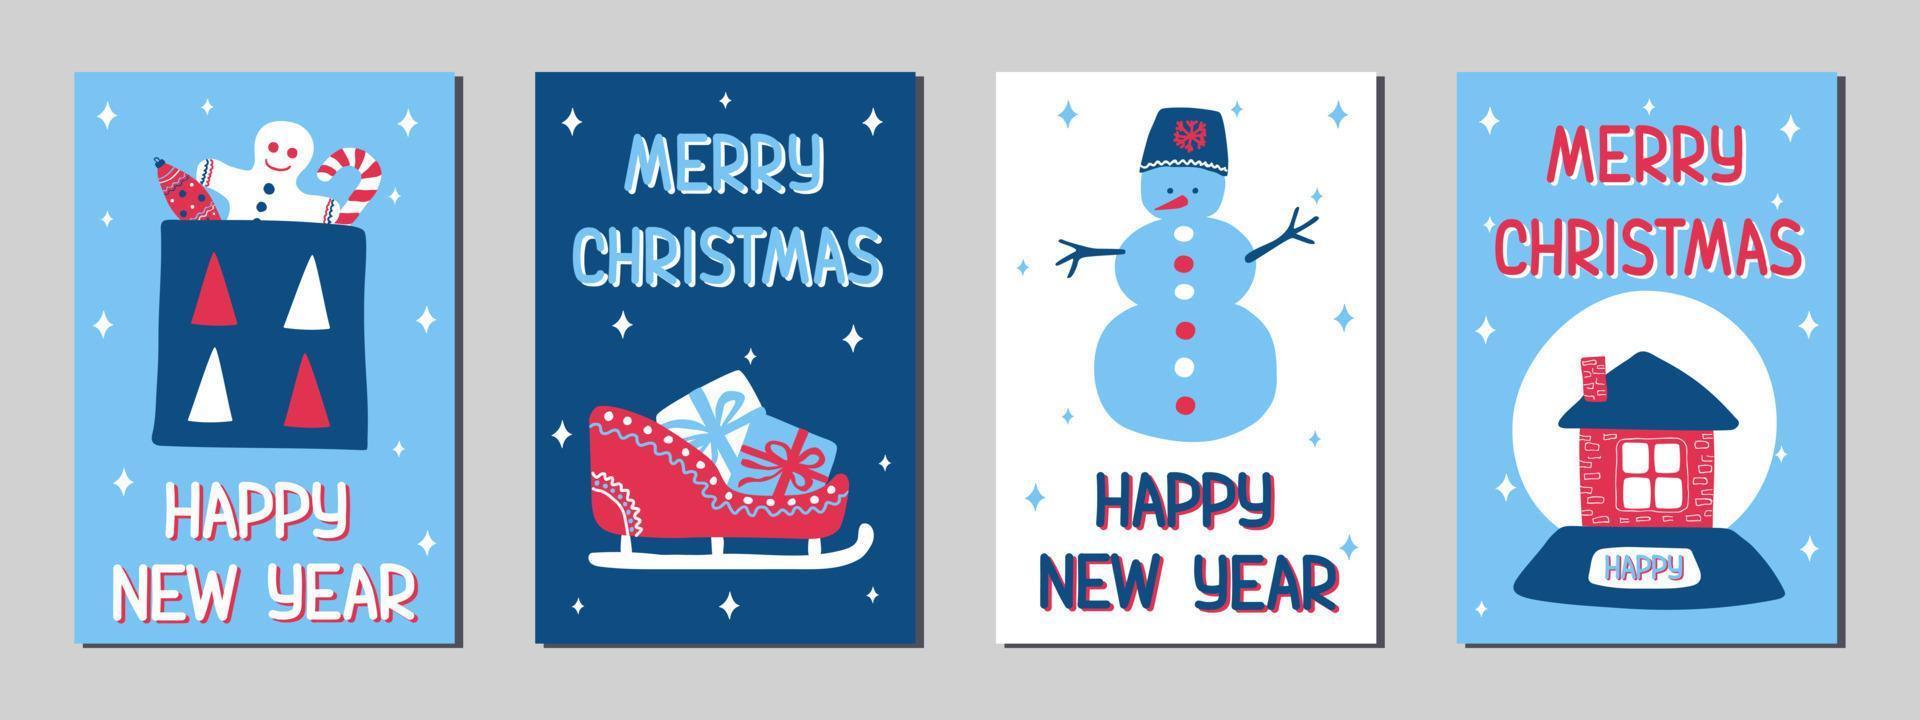 Natale e nuovo anno saluto carte nel il scandinavo scarabocchio stile, classico blu, rosa e bianca colori. azione vettore illustrazioni con simboli di vacanza - regalo, slitta, Pan di zenzero uomo, pupazzo di neve